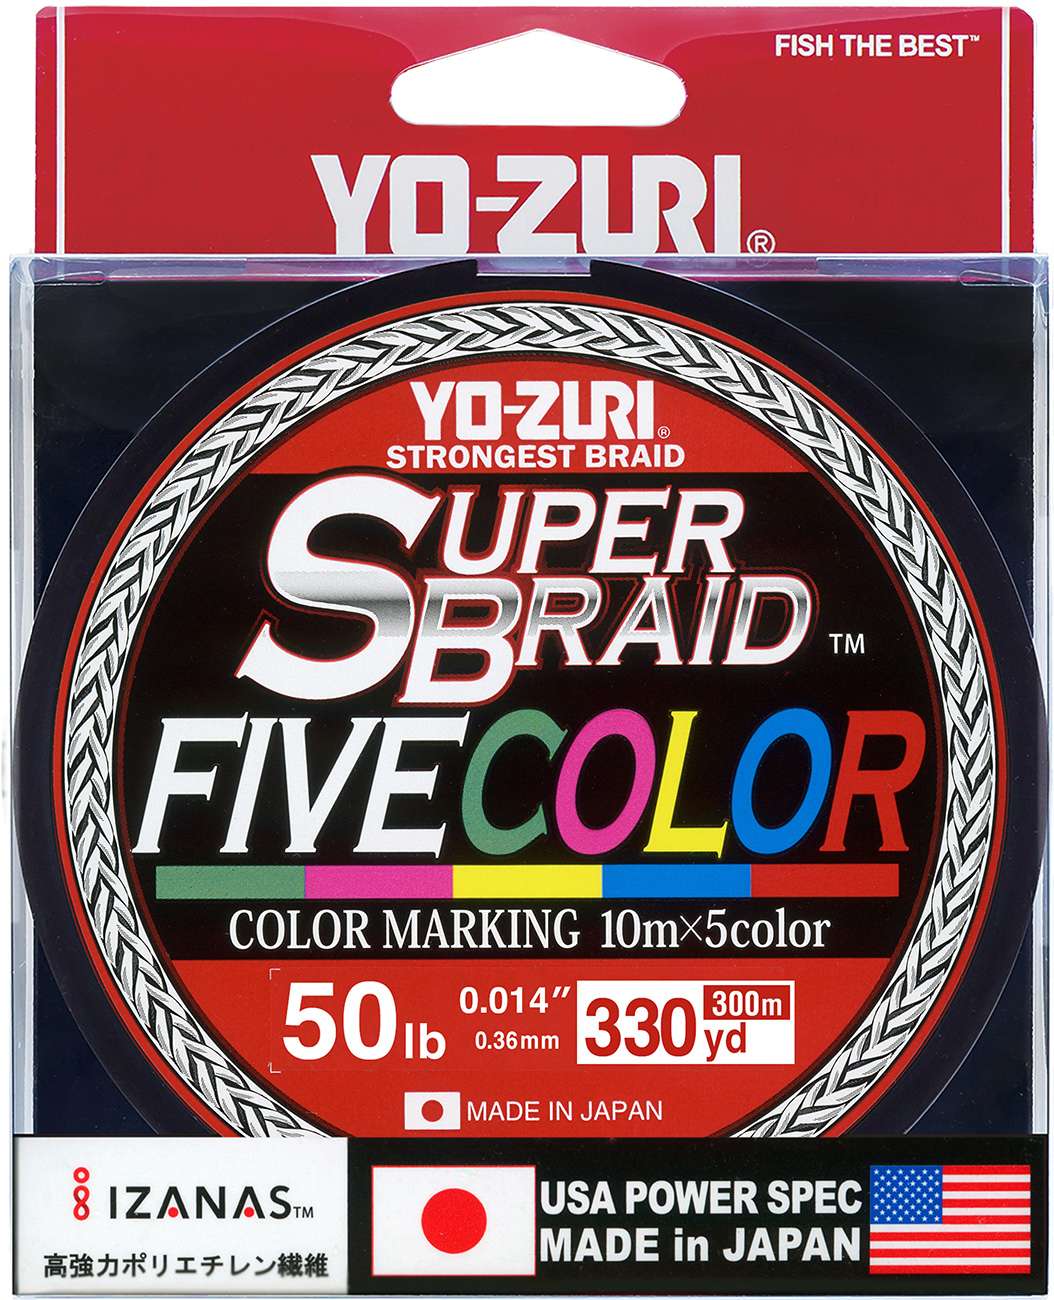 https://i.tackledirect.com/images/inset5/yo-zuri-superbraid-five-color.jpg